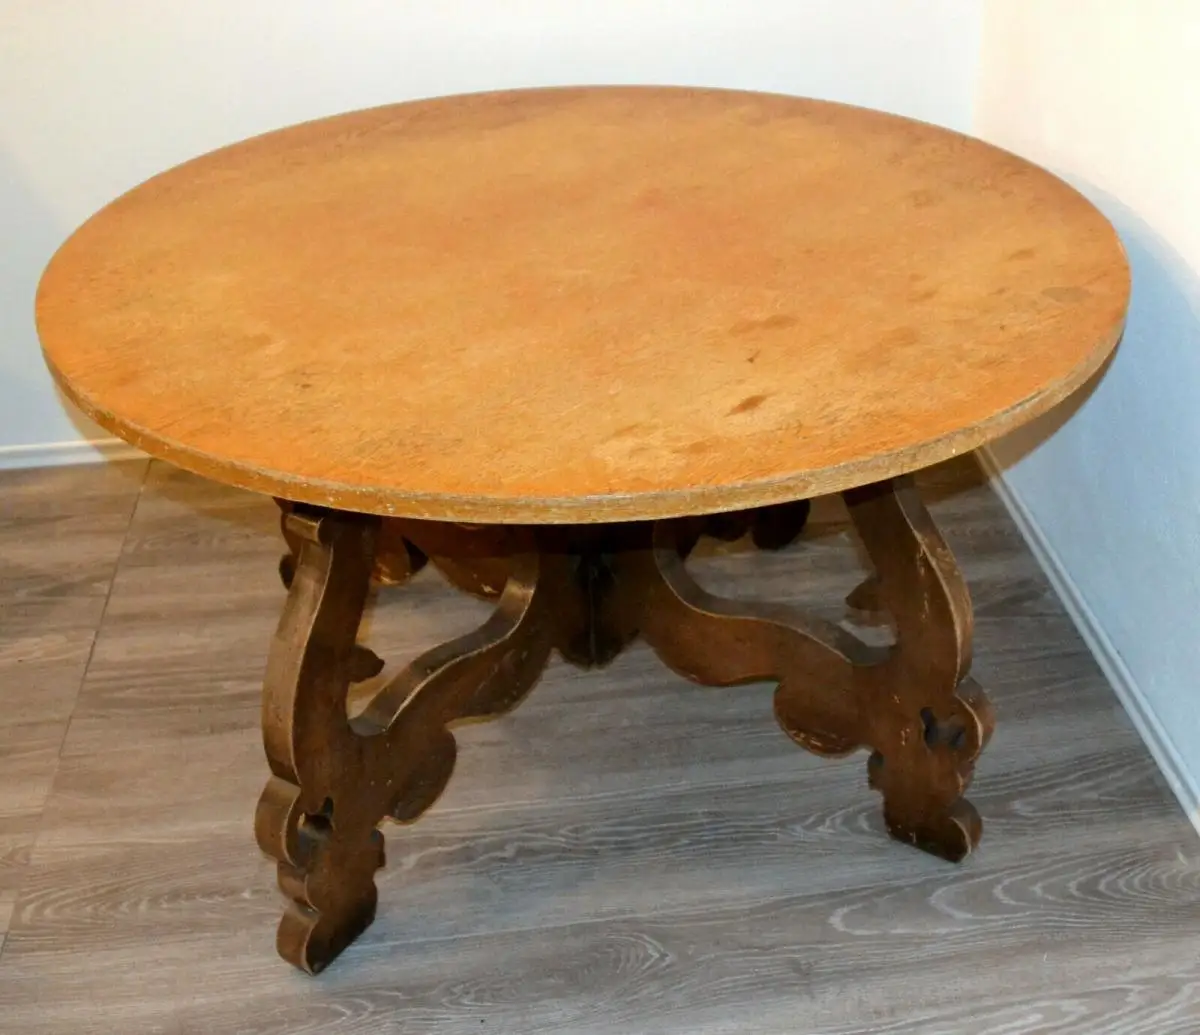 Möbel,runder Bauerntisch, alter Barockfuss, neue Platte,für Restaurator/Bastler 0